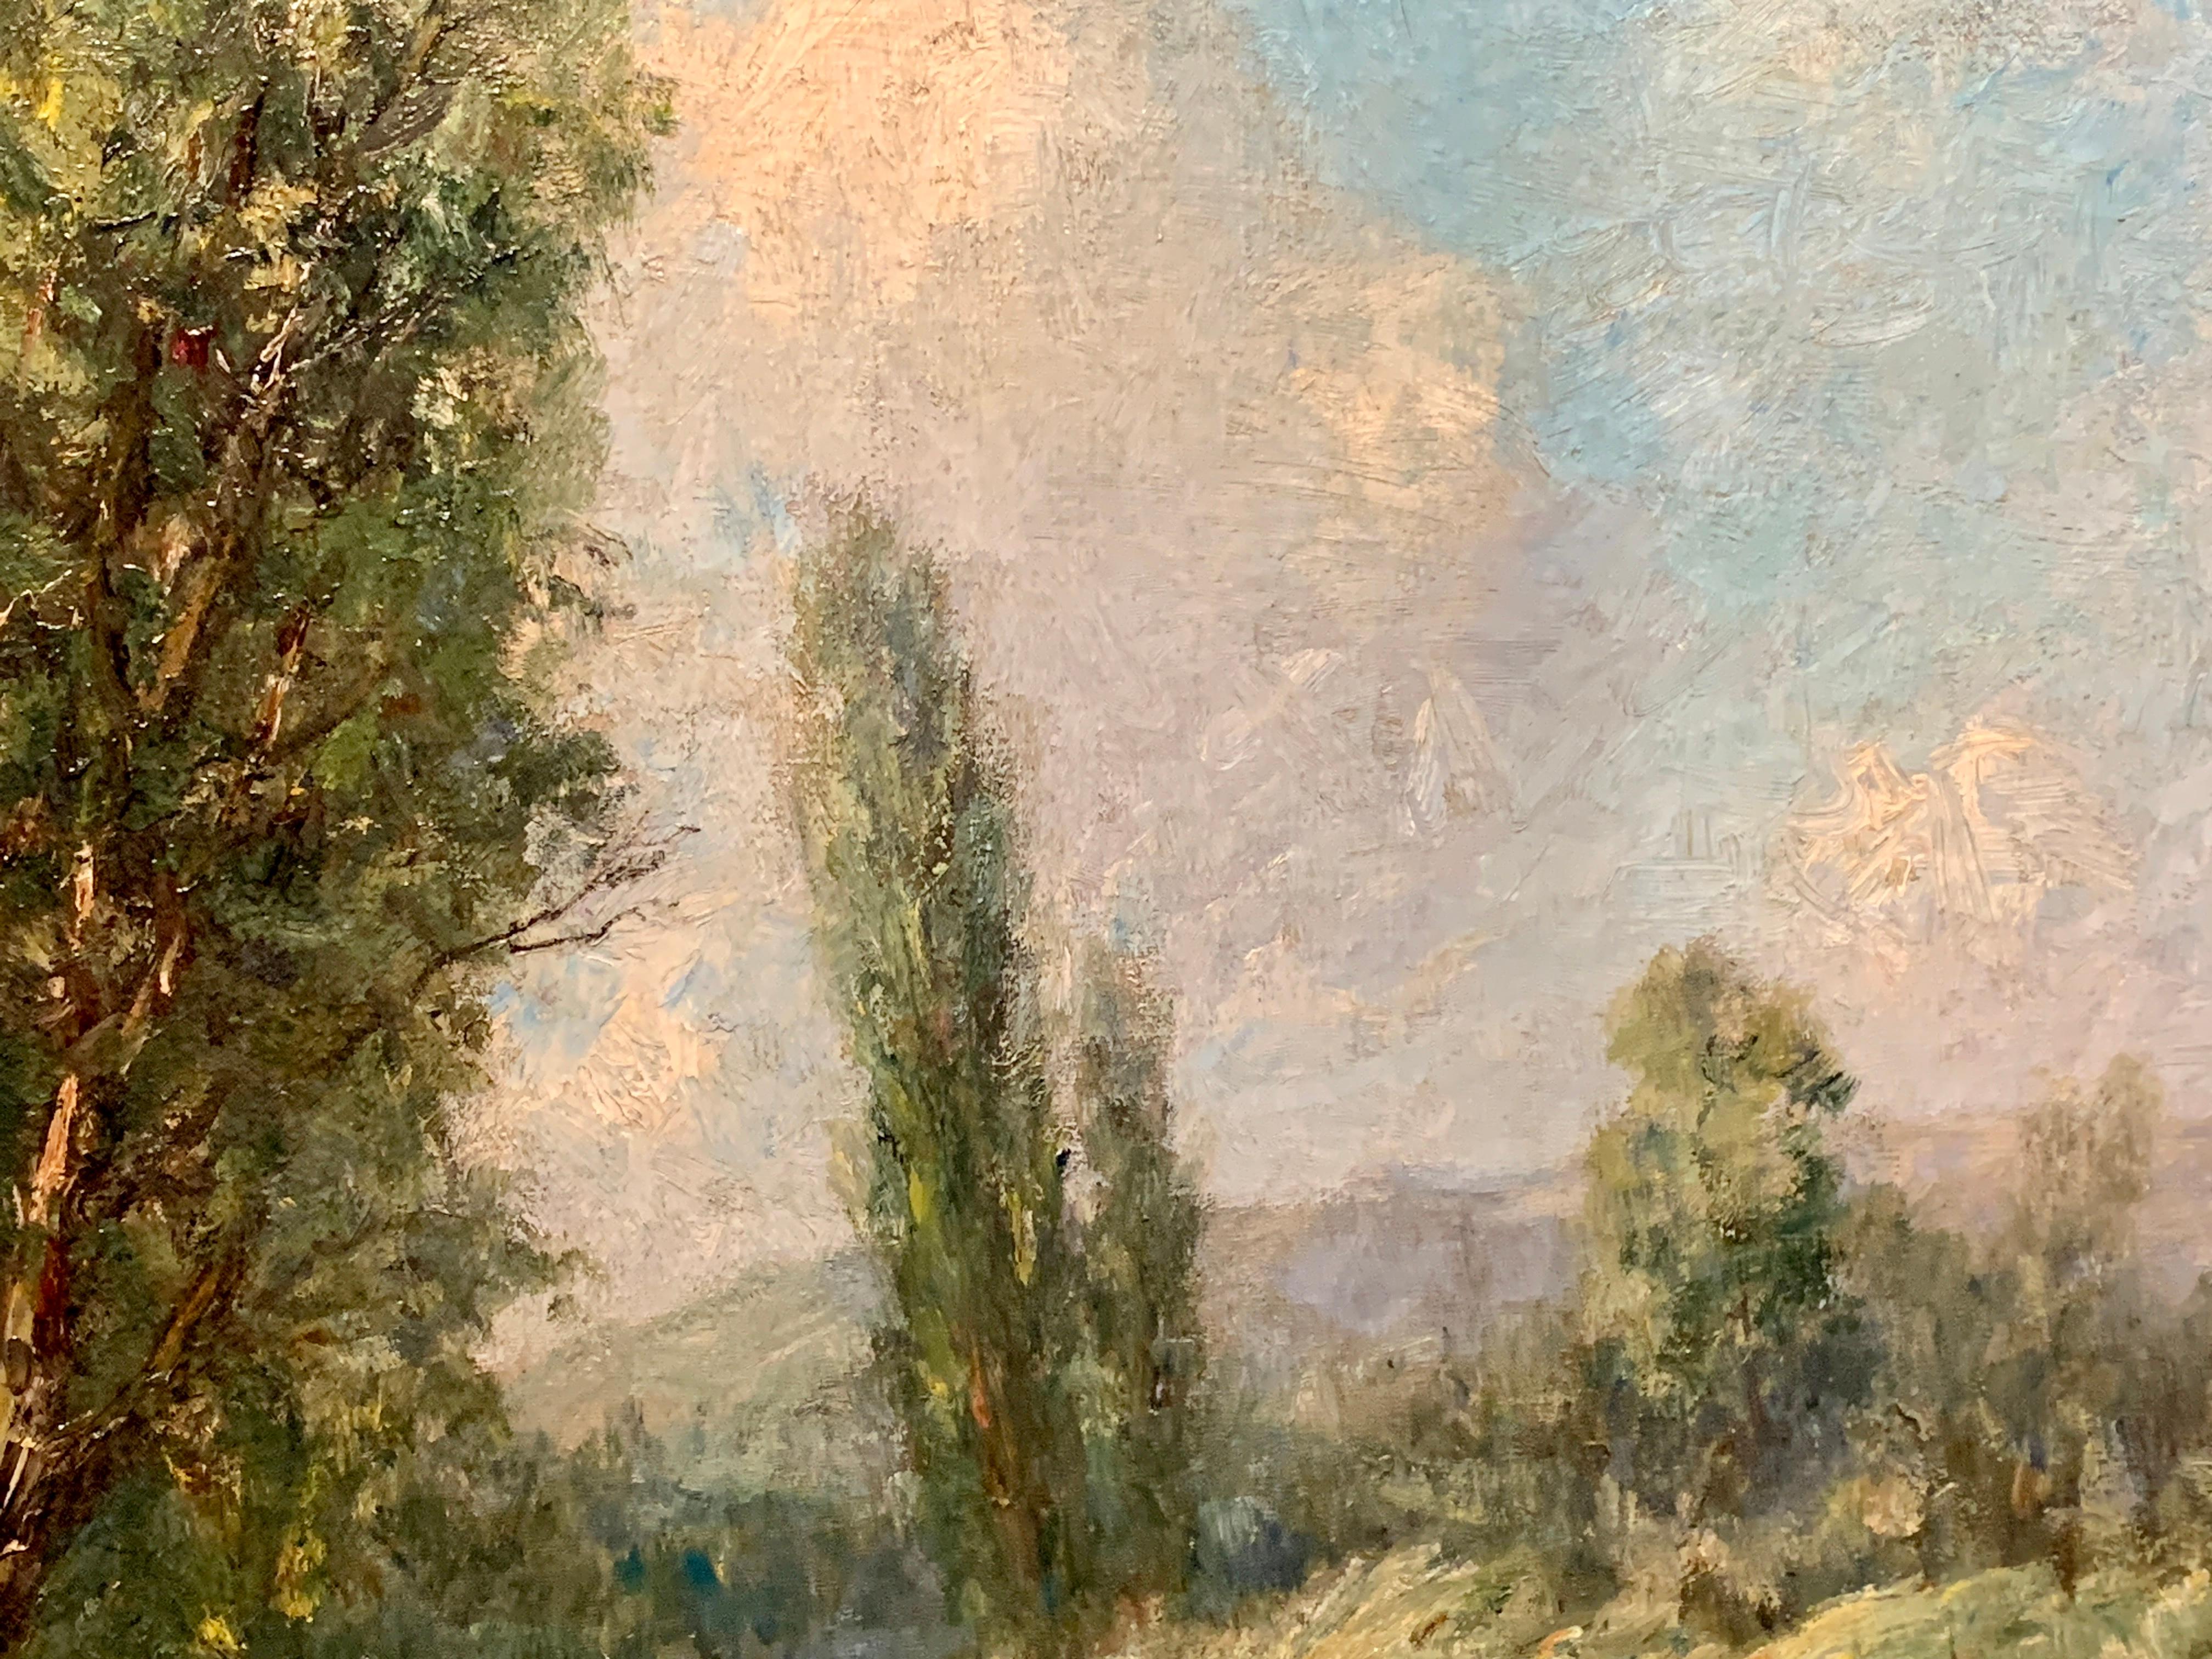 19ème siècle  Scène impressionniste anglaise de la forêt de Barbizon, près de Paris, en France, avec une rivière, des vaches et des arbres.

 Boyle était un artiste britannique pionnier du XIXe siècle, inspiré par les peintres impressionnistes